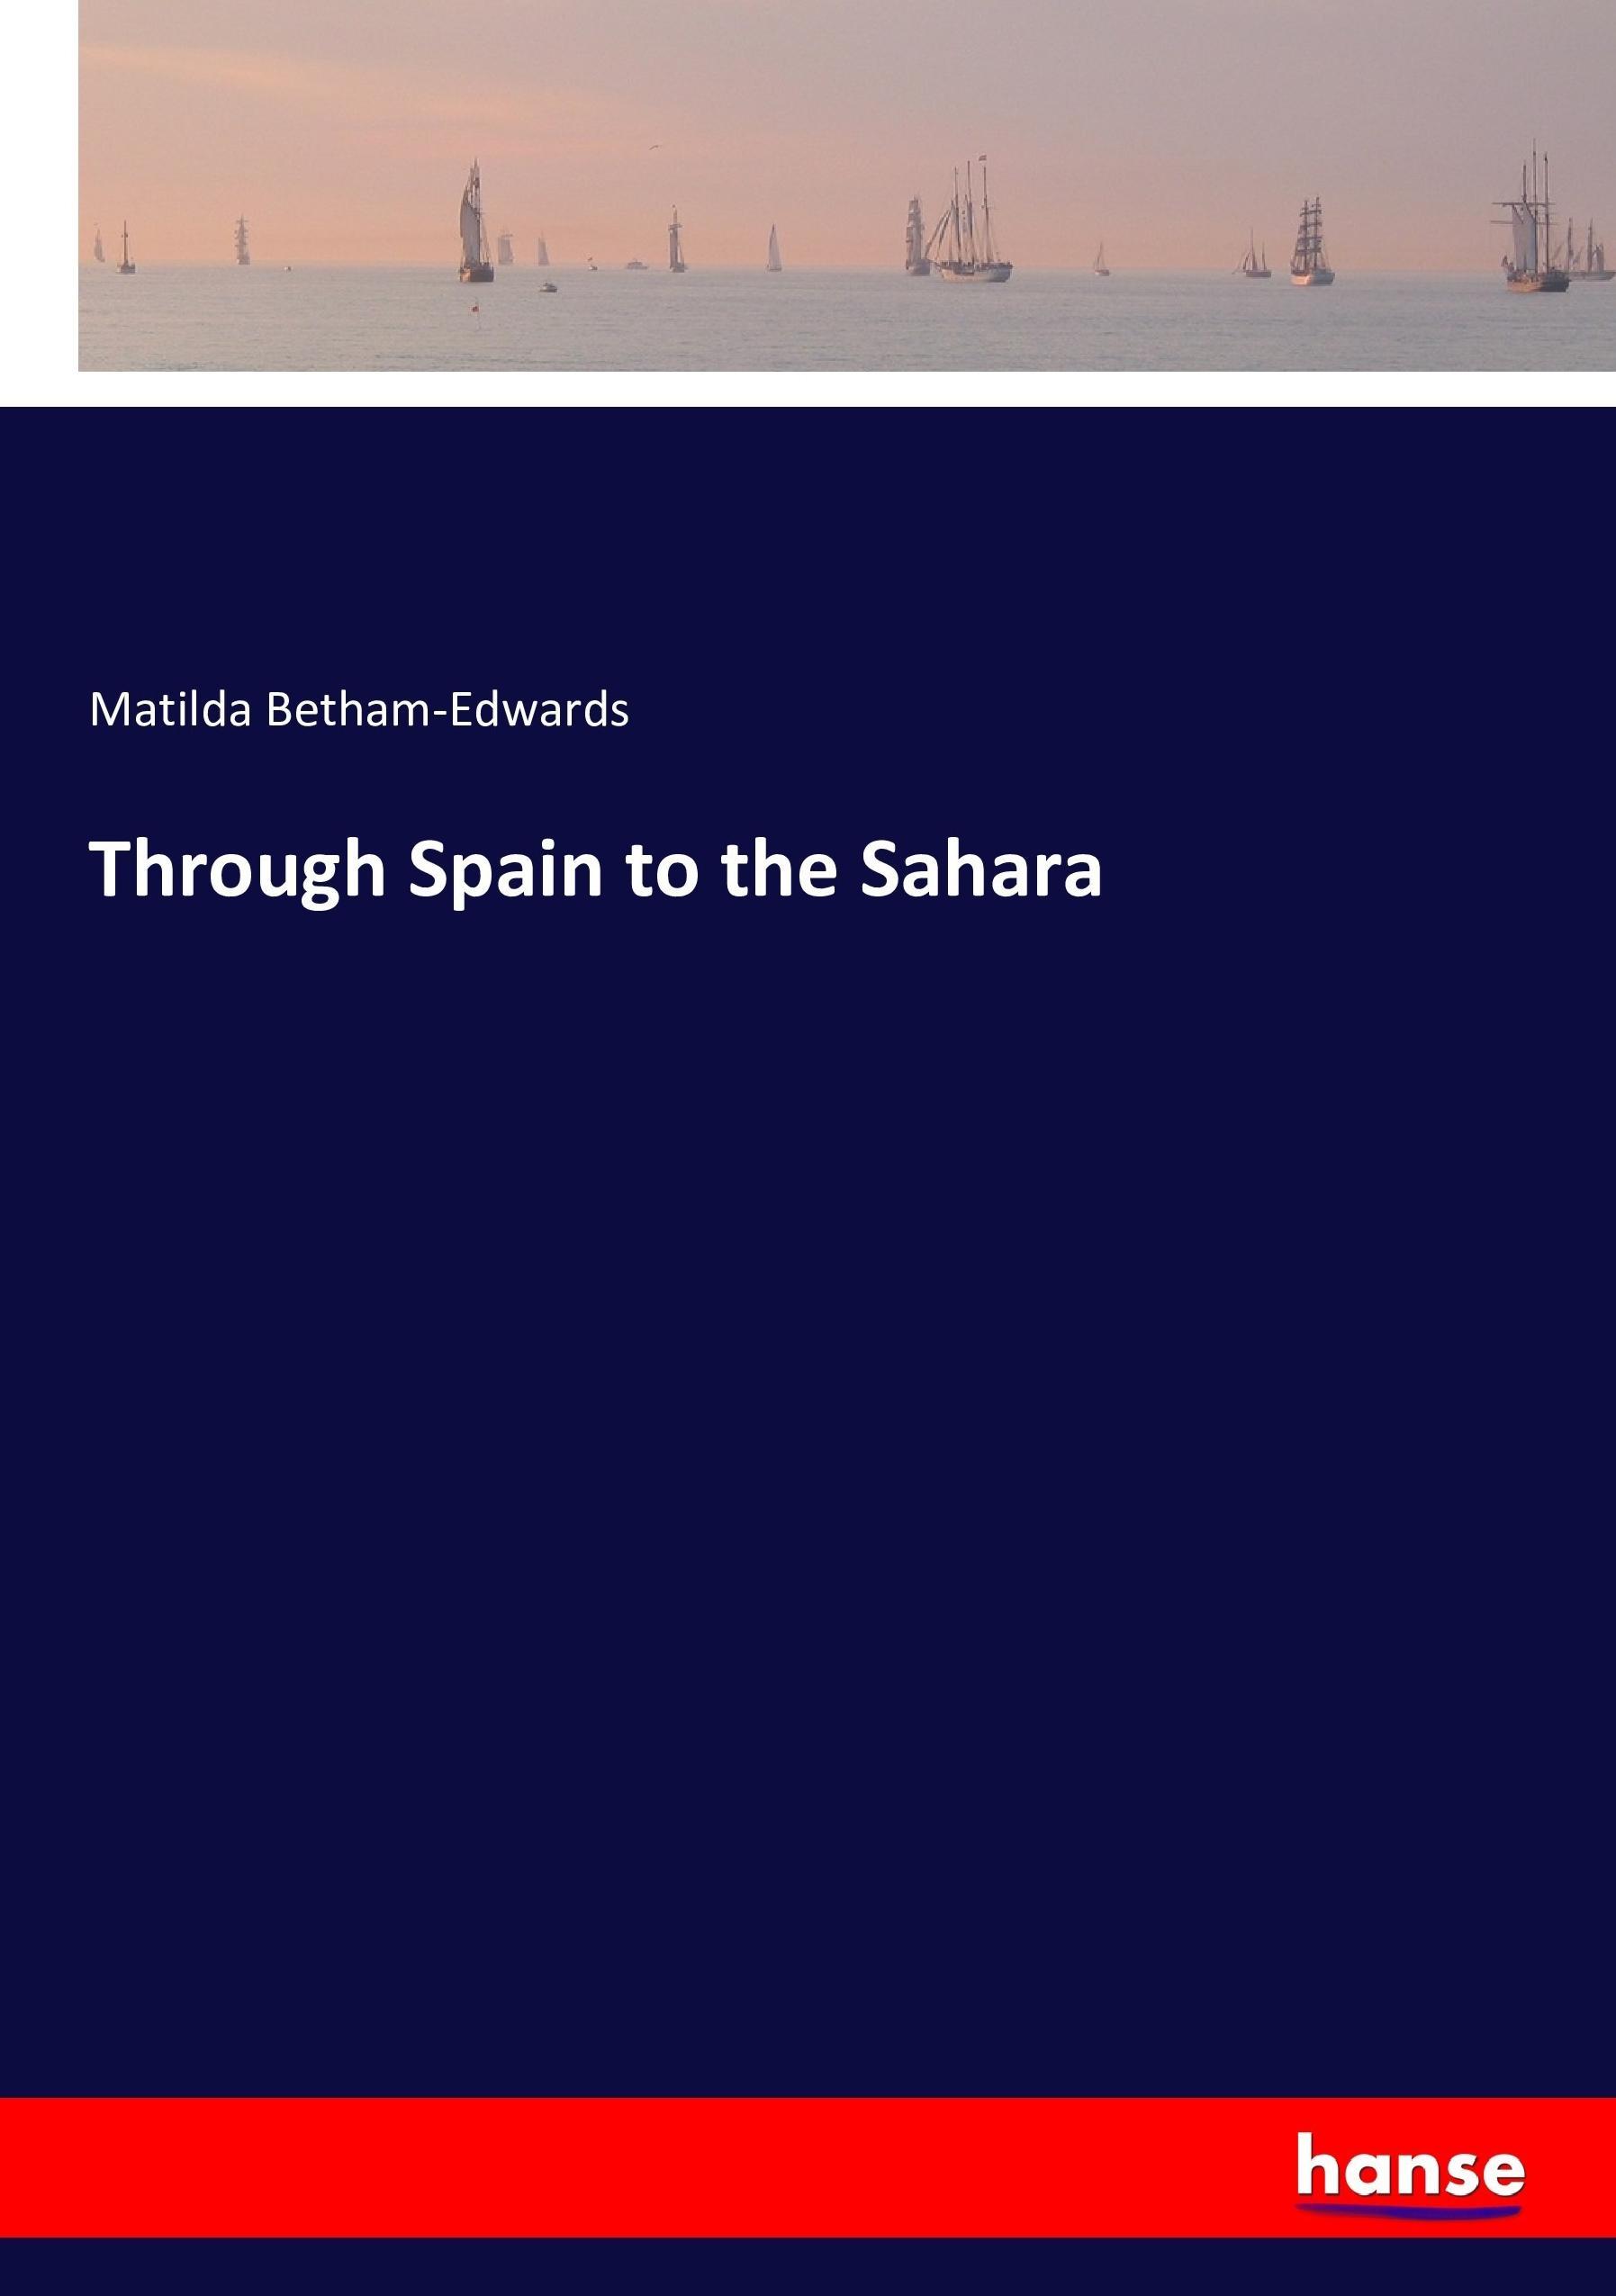 Through Spain to the Sahara / Matilda Betham-Edwards / Taschenbuch / Paperback / 328 S. / Englisch / 2016 / hansebooks / EAN 9783743317291 - Betham-Edwards, Matilda